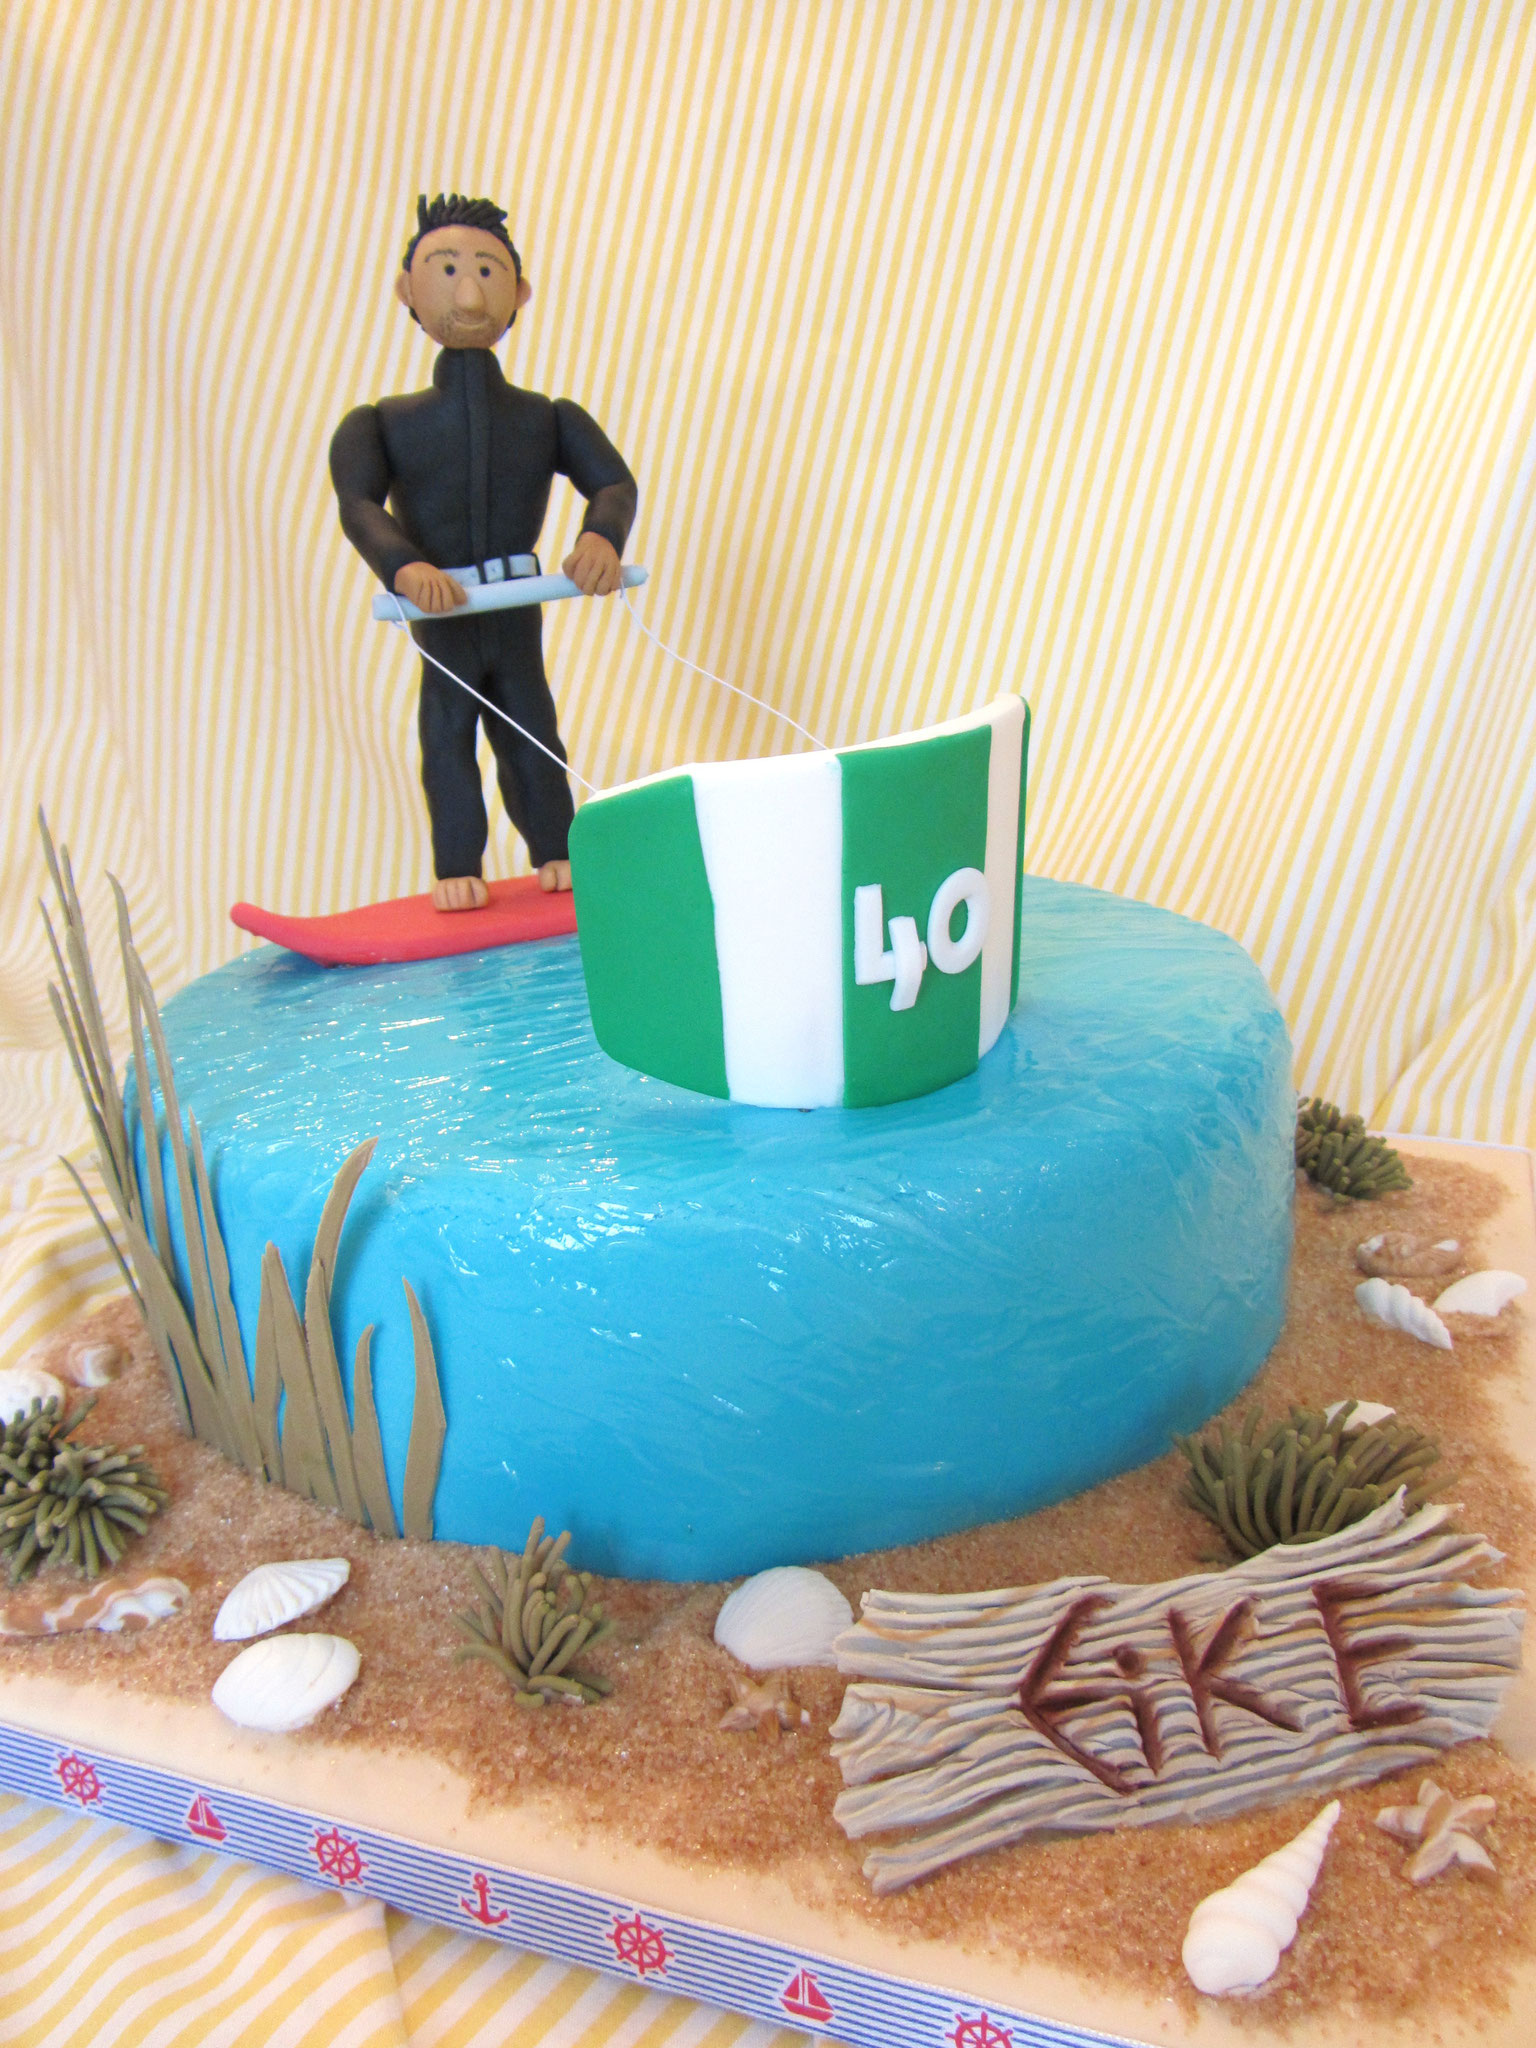 Kite-Surfer on Cake